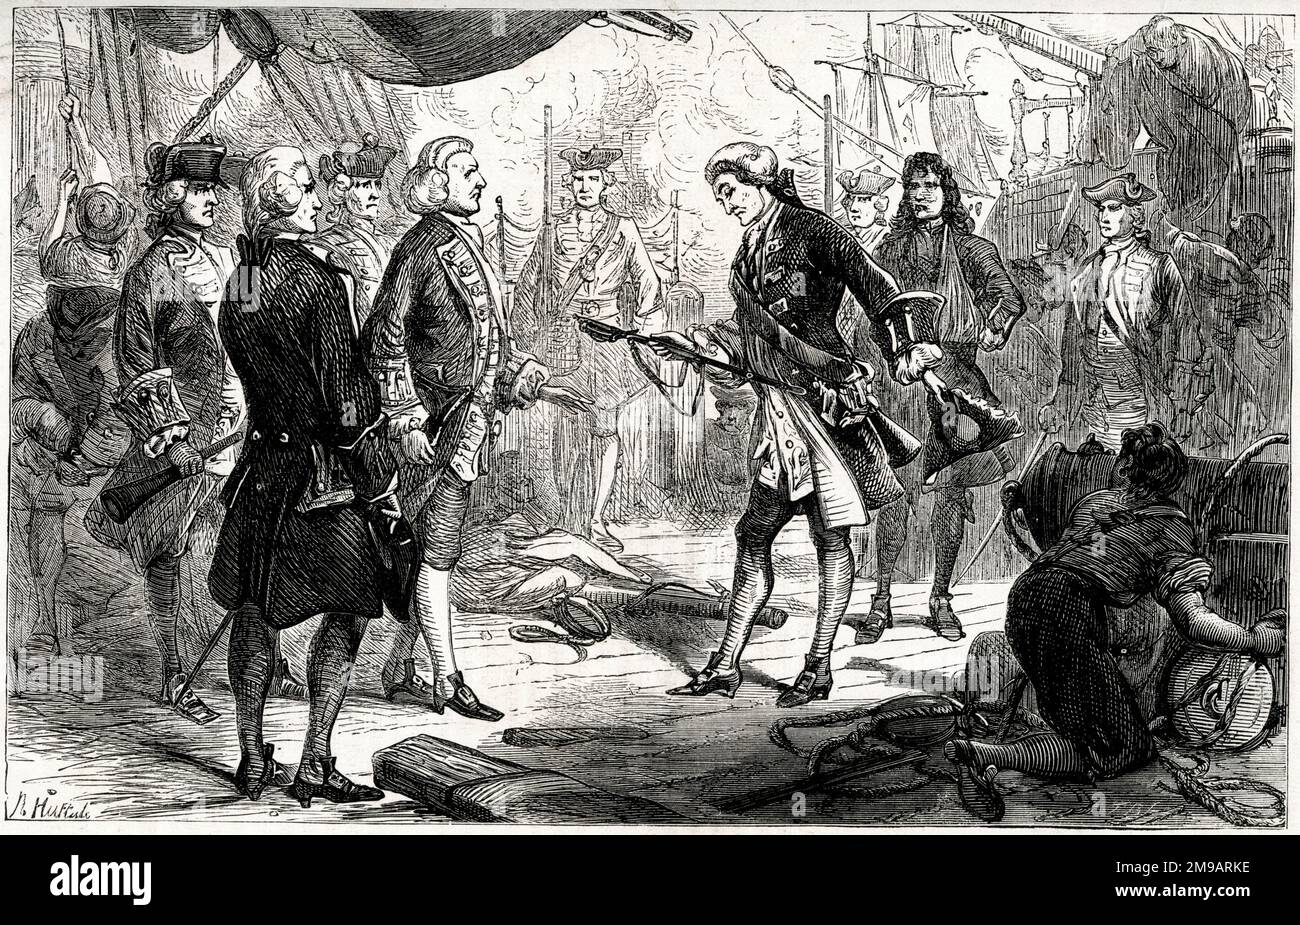 Le Chevalier de Saint-George du navire invincible remet son épée à l'amiral Anson après la première bataille du Cap-Finisterre entre la Grande-Bretagne et la France, le 14 mai 1747, pendant la guerre de succession d'Autriche (1740-1748). Banque D'Images